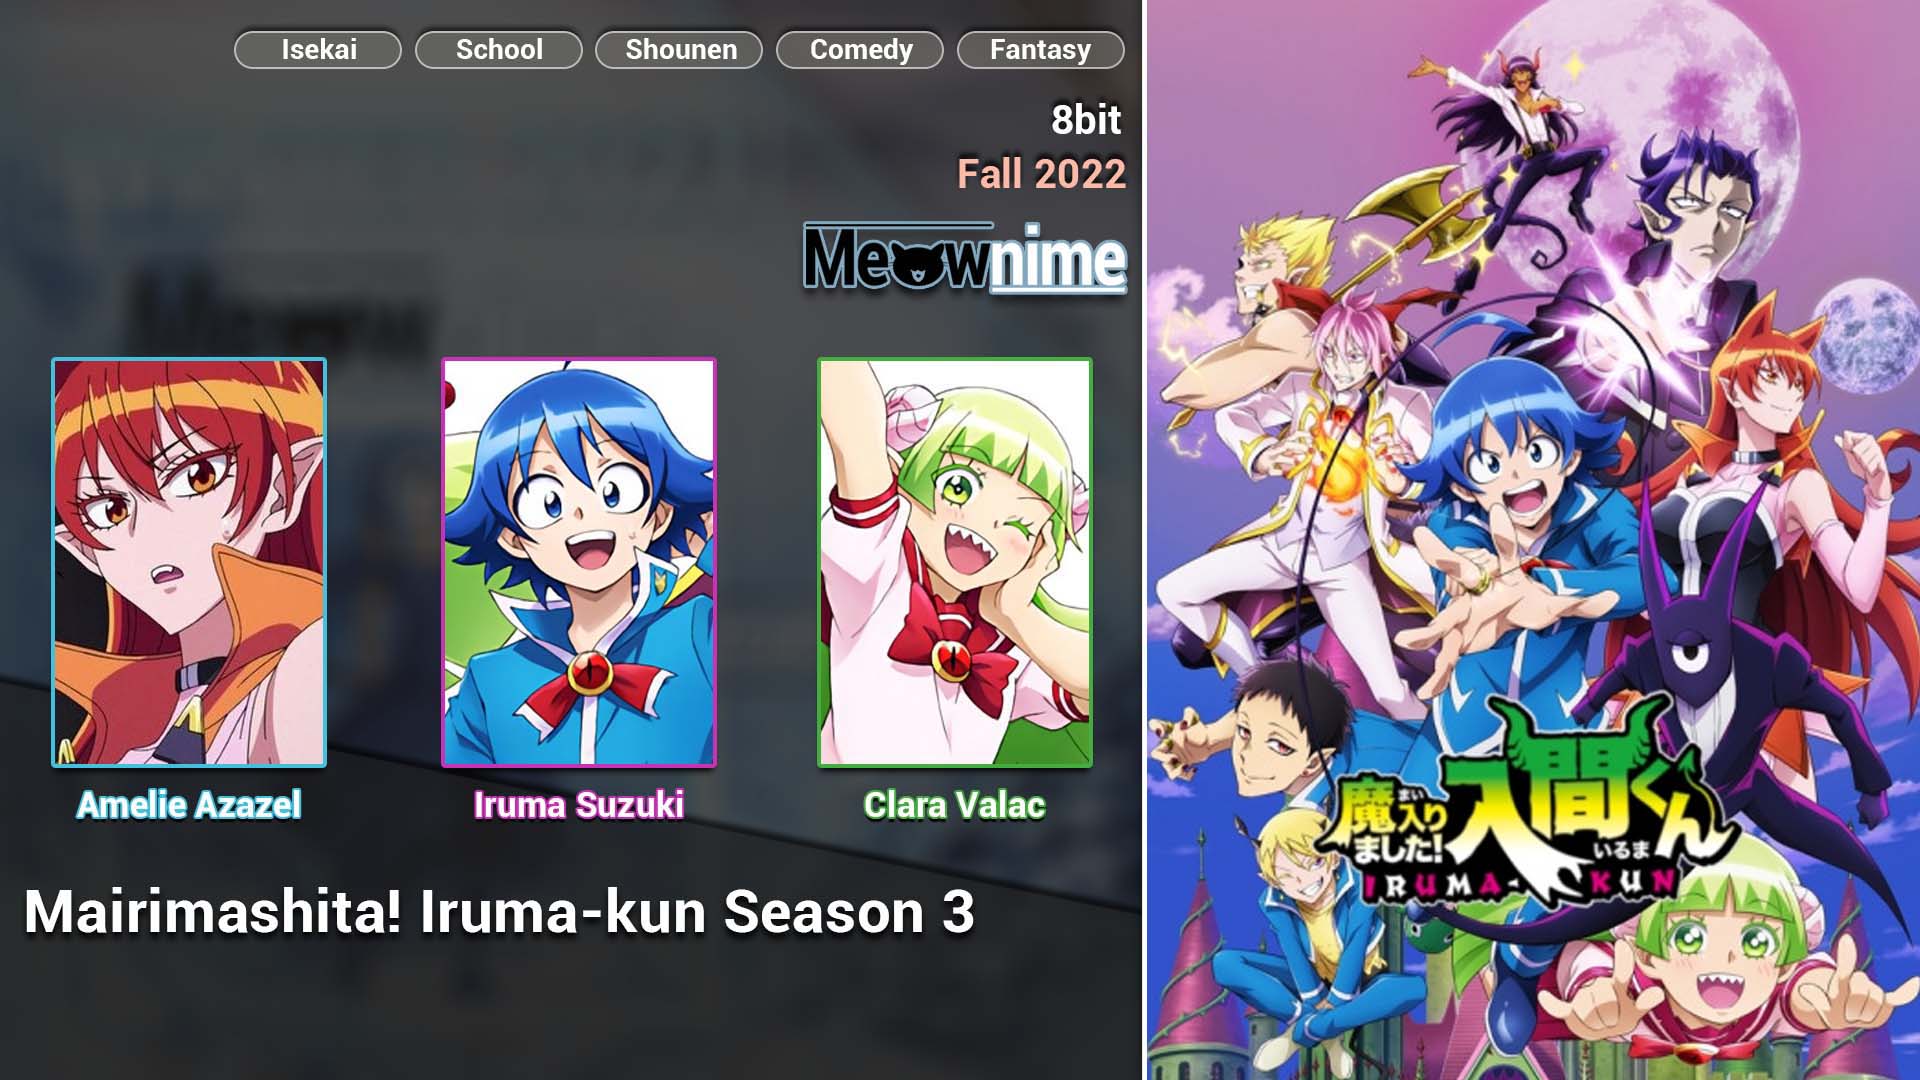 Mairimashita! Iruma-kun Season 3